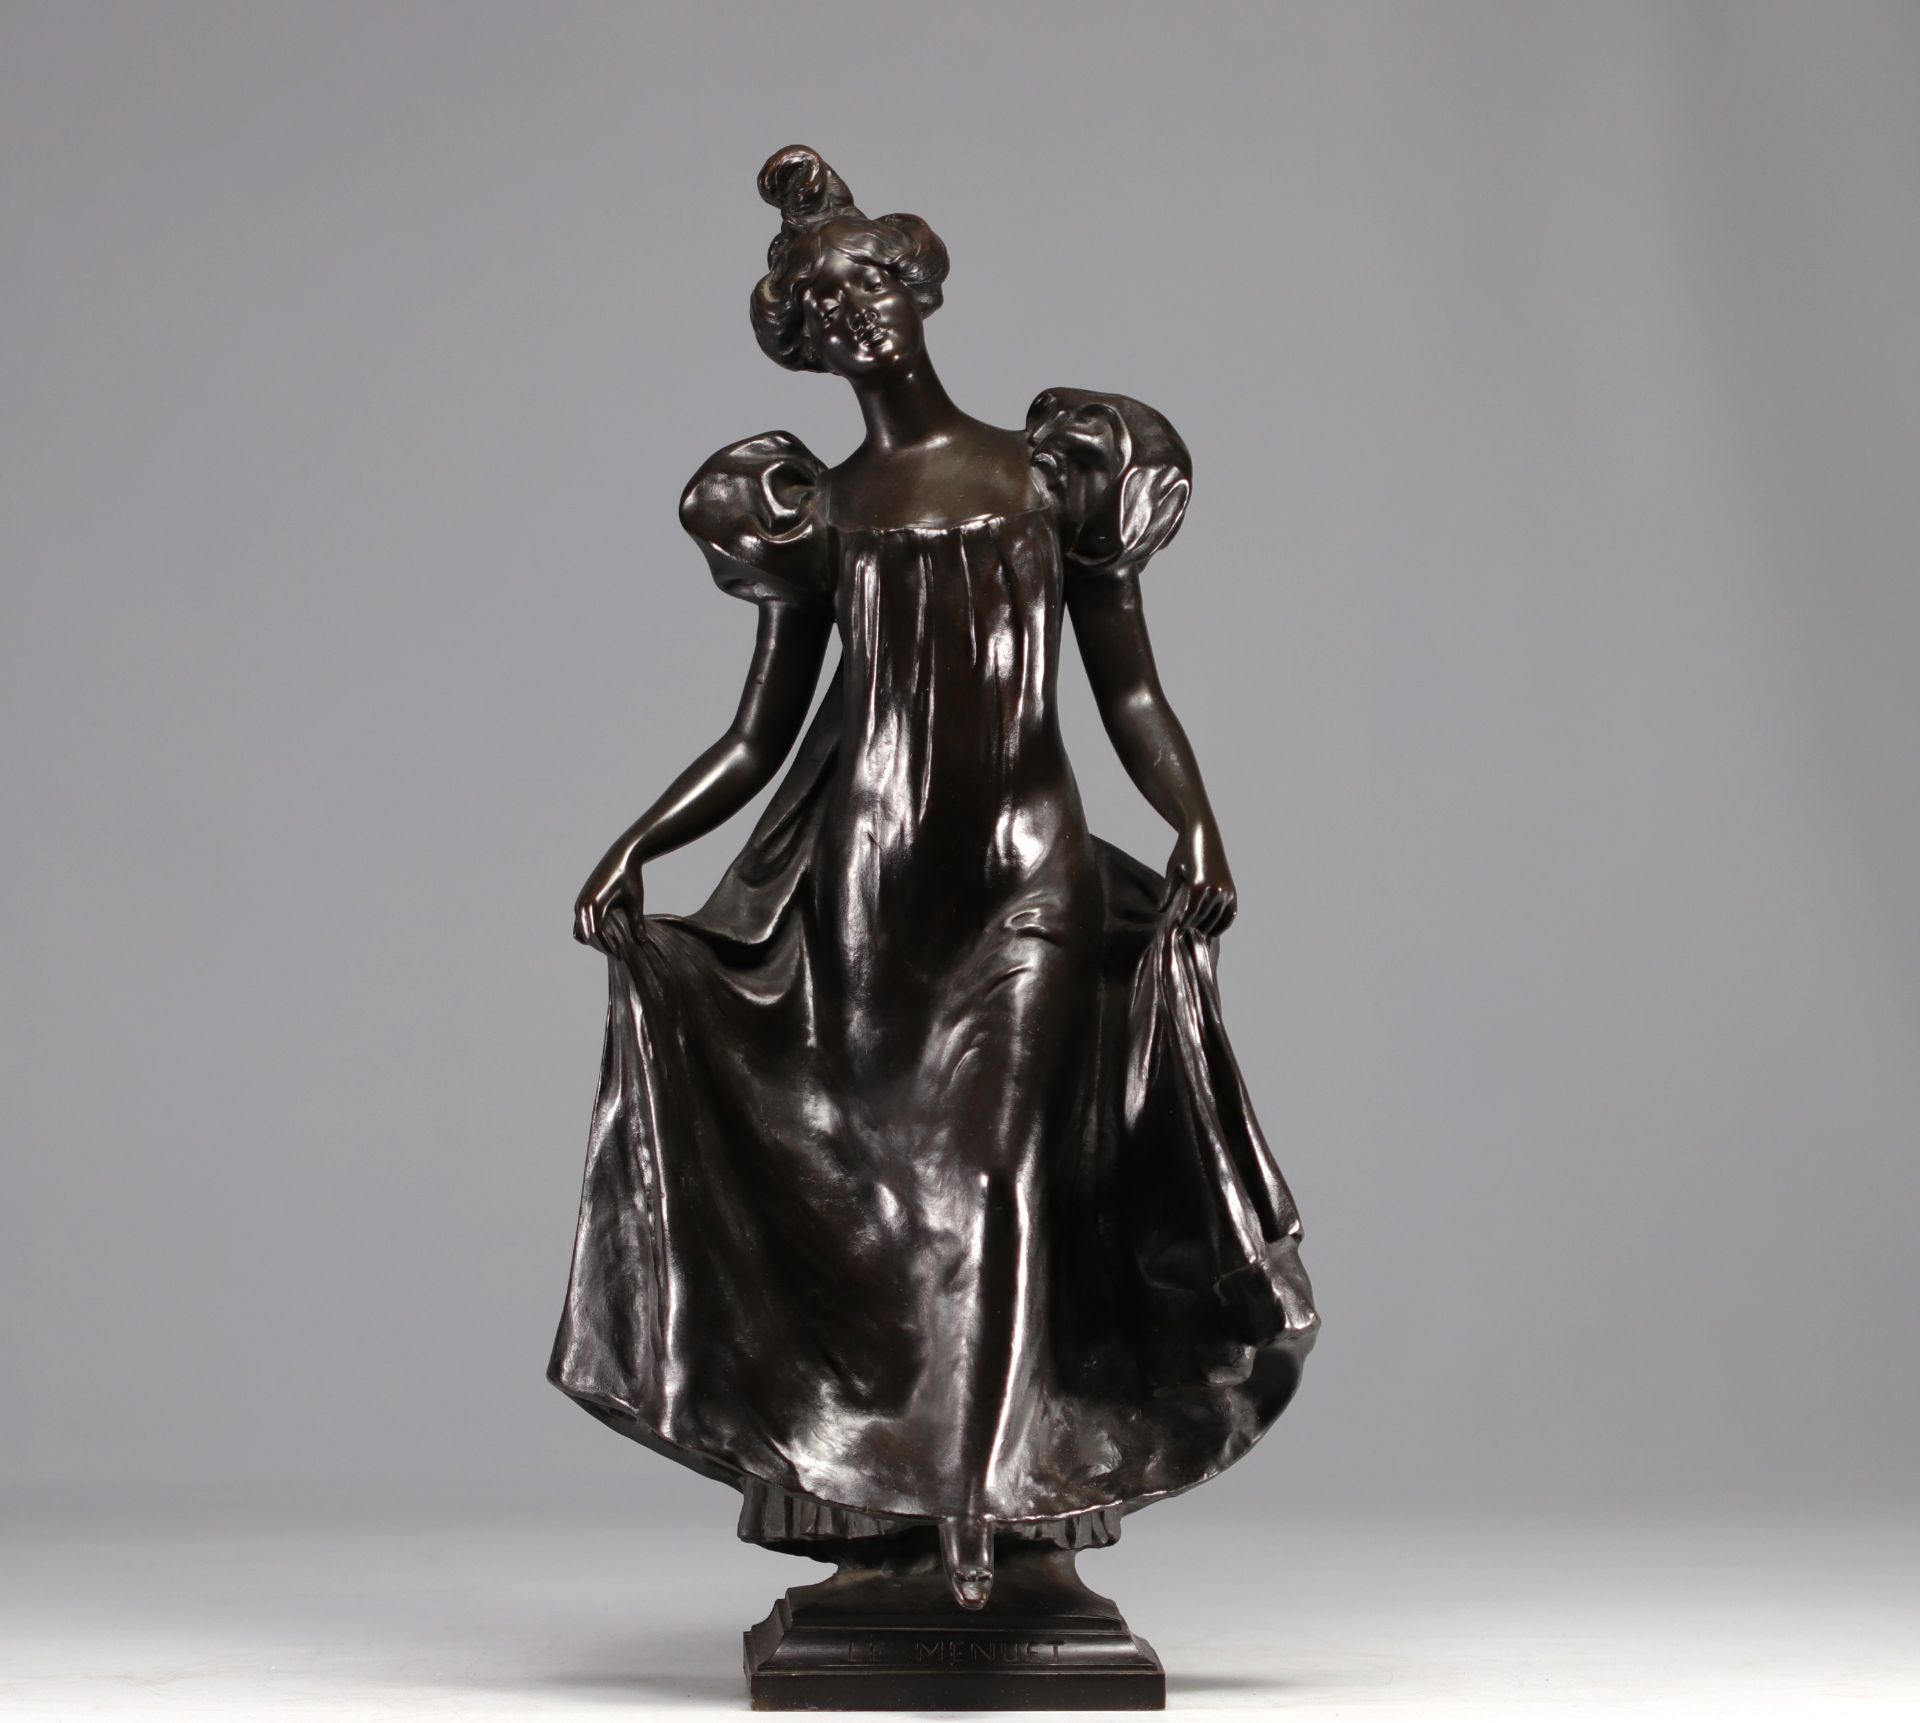 Leo LAPORTE-BLAIRSY (1862-1923) "Le Menuet" Bronze sculpture